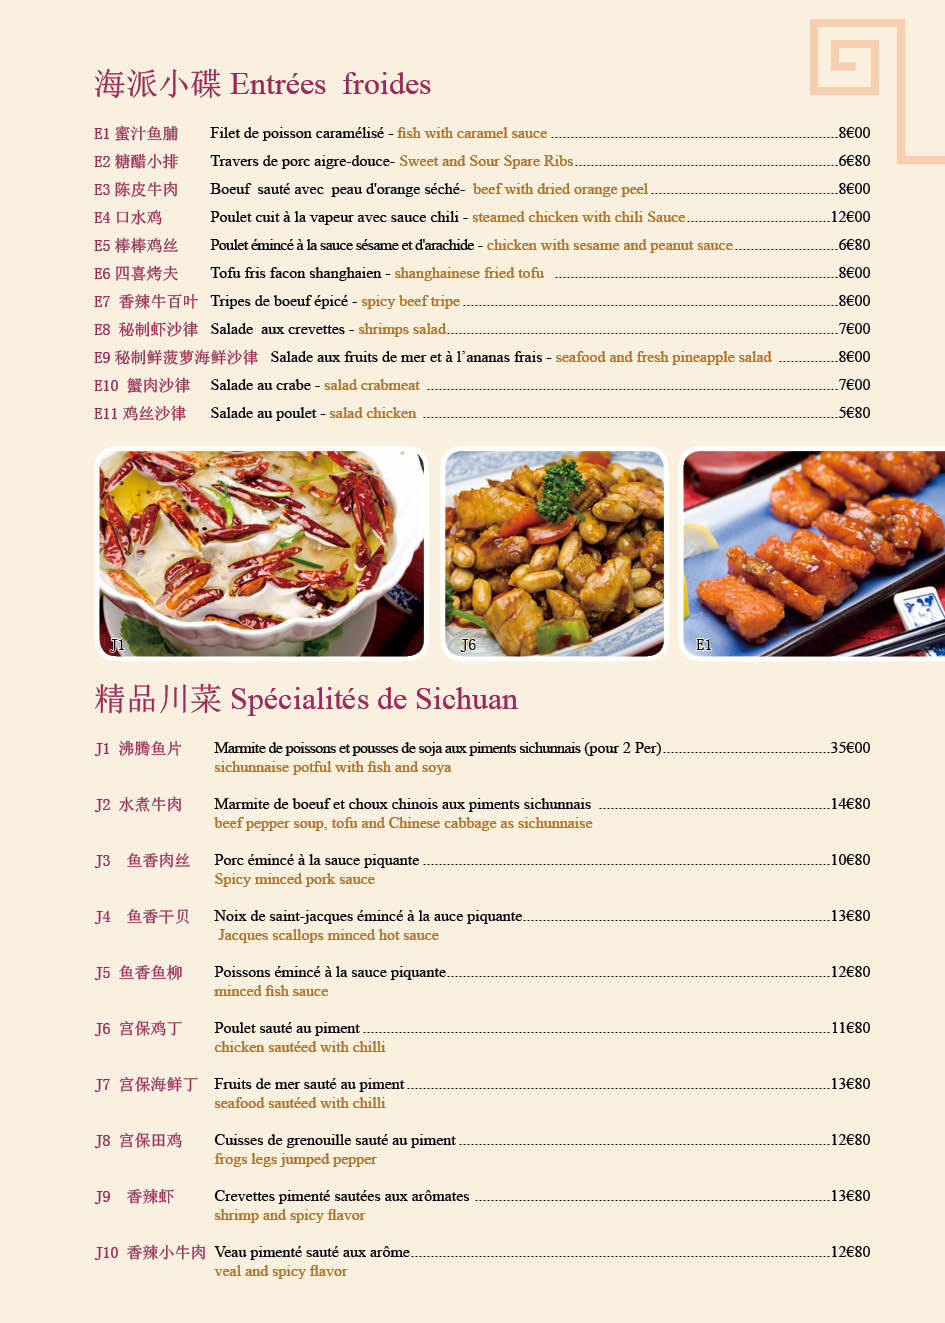 腾龙阁-法国中餐厅menu设计图2